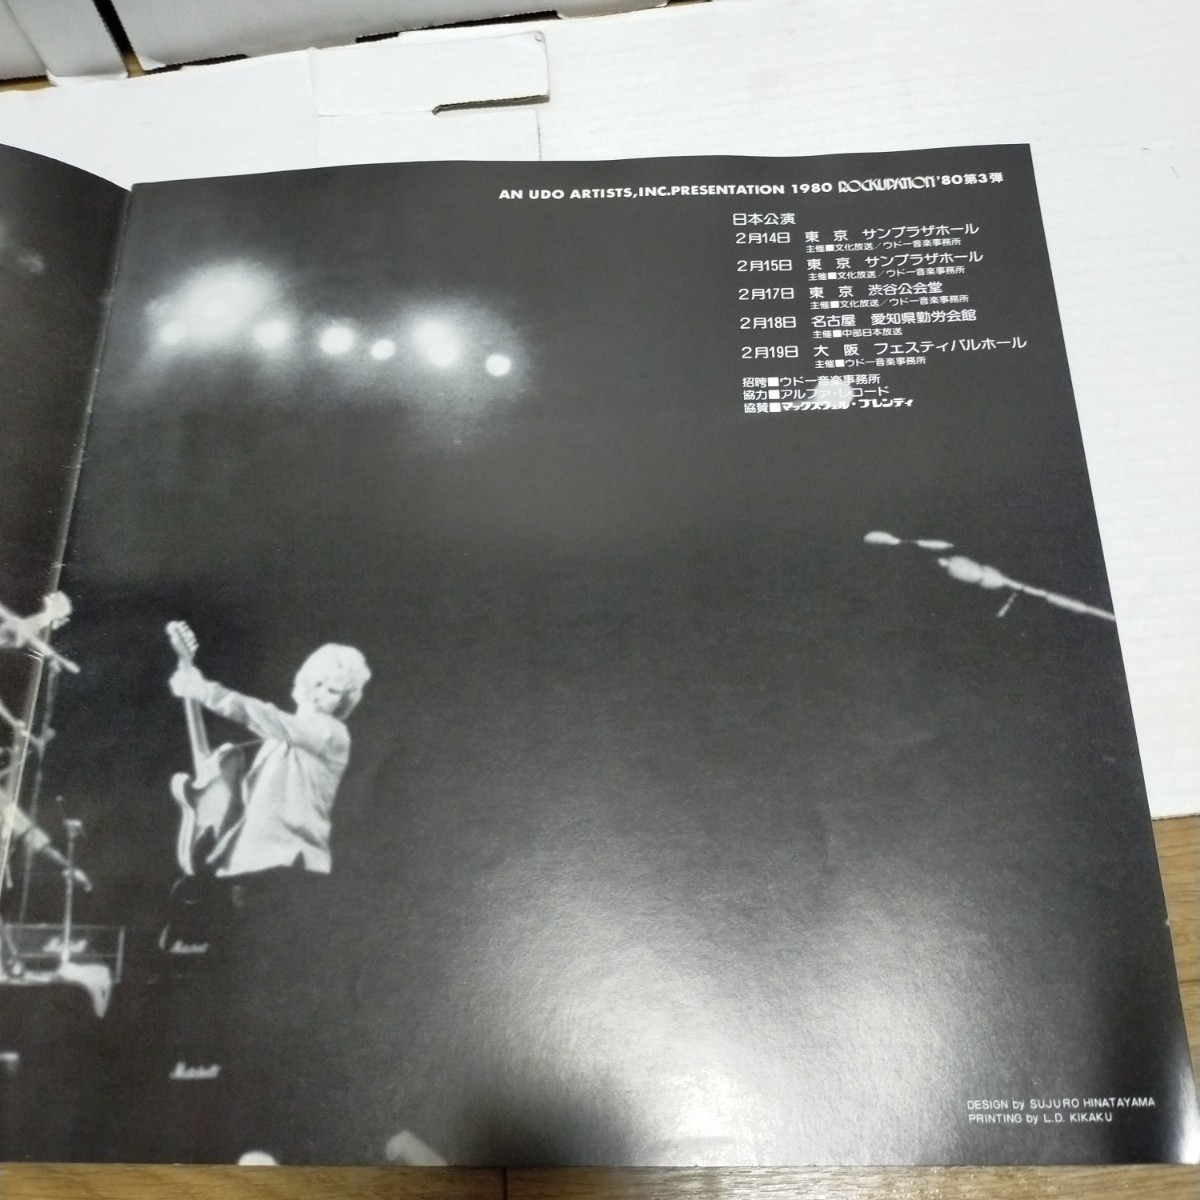 パンフレット/THE POLICE ザ・ポリス 1980 JAPAN TOUR 来日公演 ウドー音楽事務所 UDO ARTISTS,INC./STING スティング_画像3